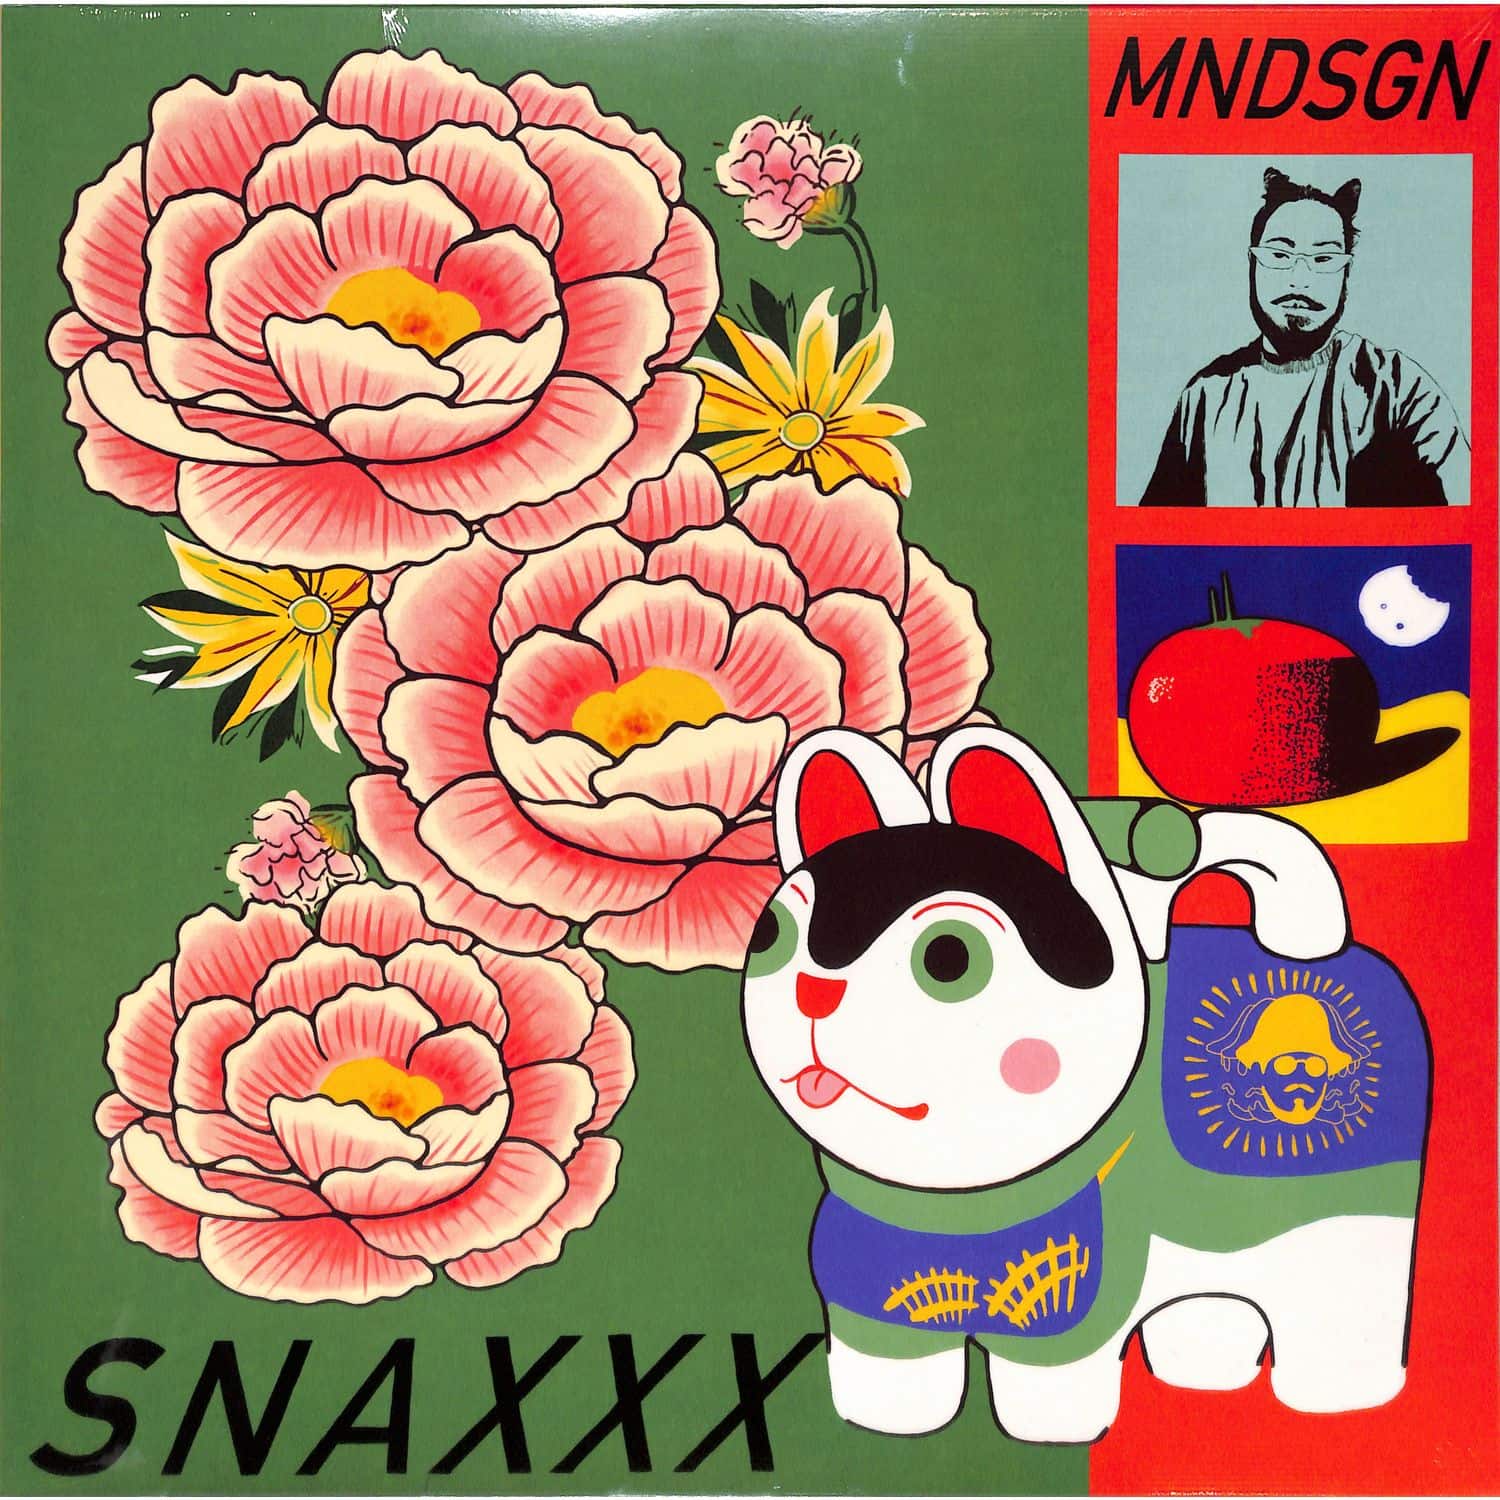 Mndsgn - SNAXXX 